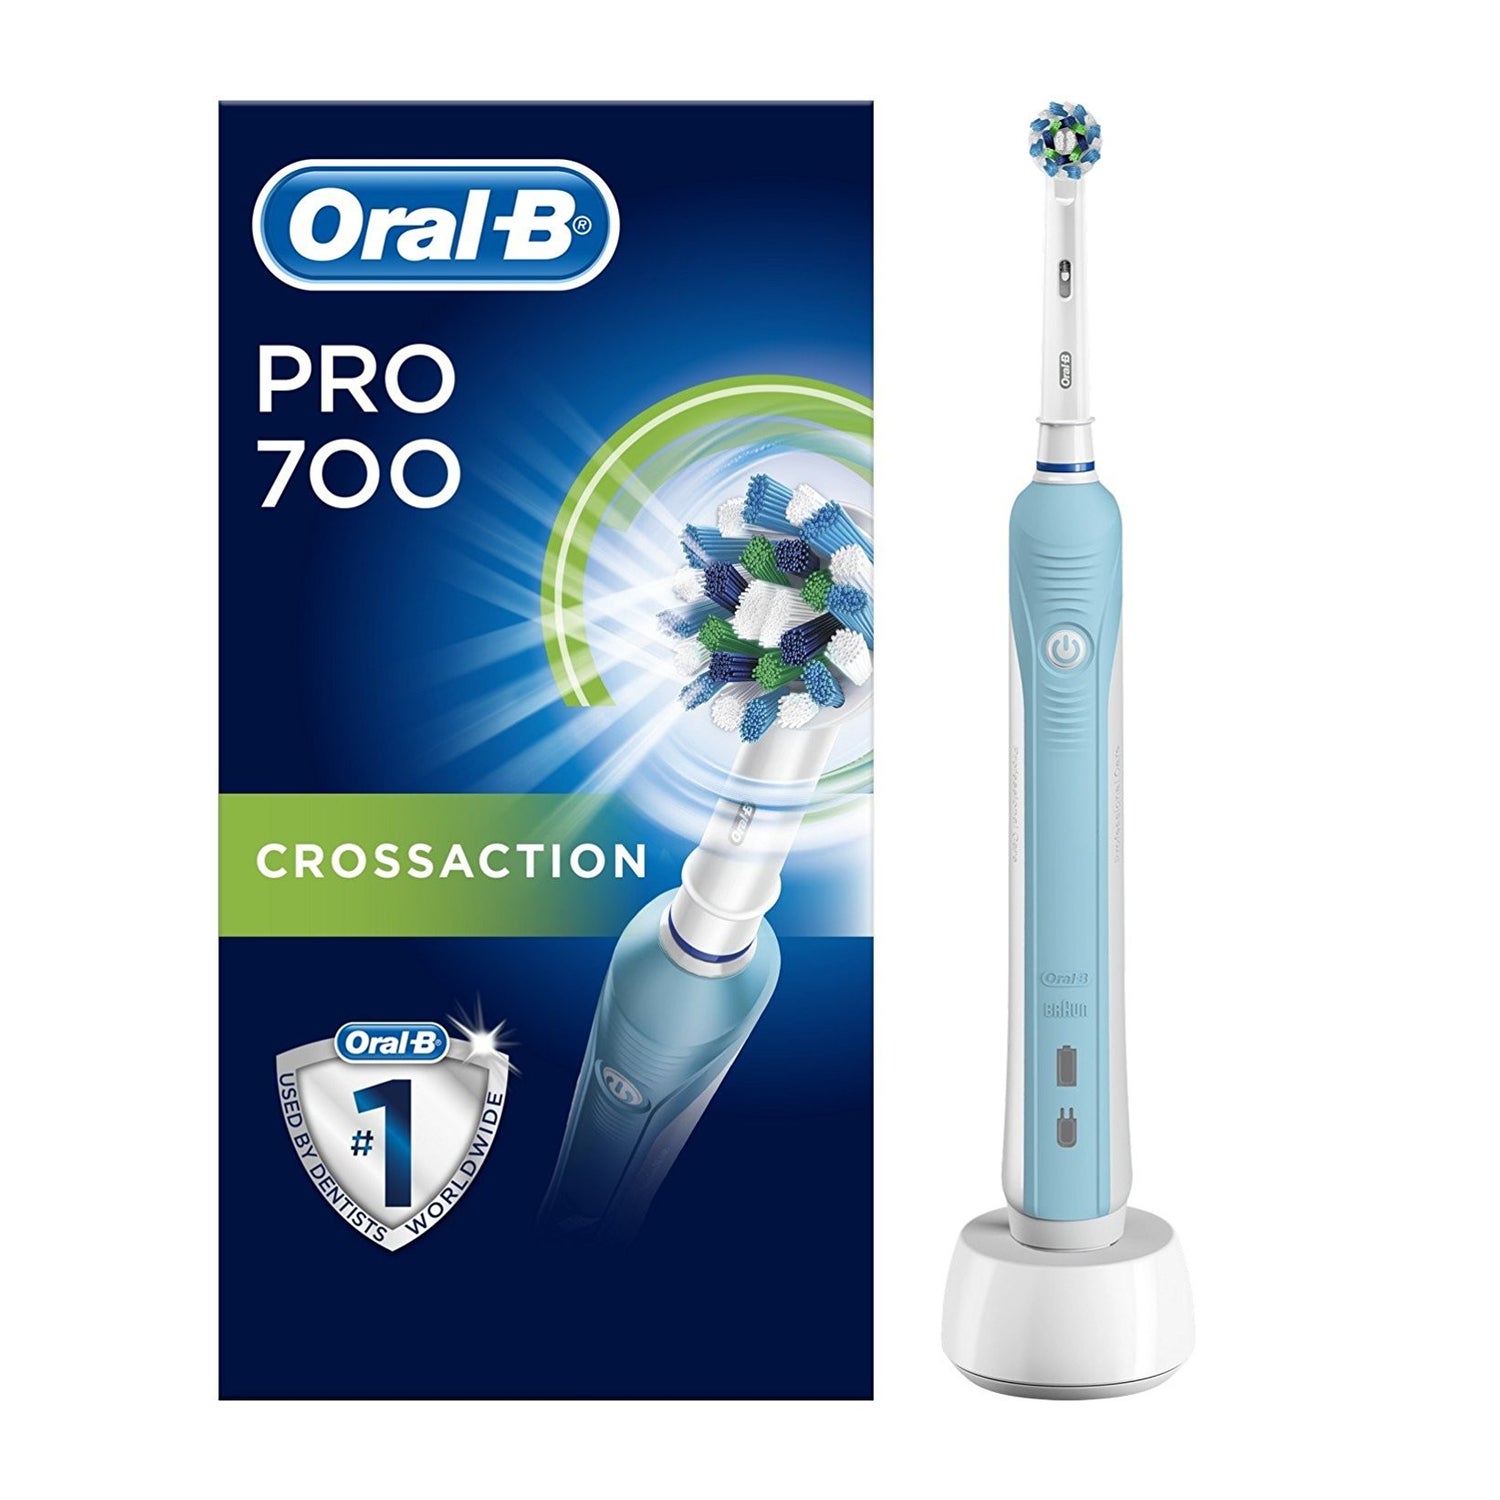 oral-b-cepillo-dental-electrico-recargable-vital-azul